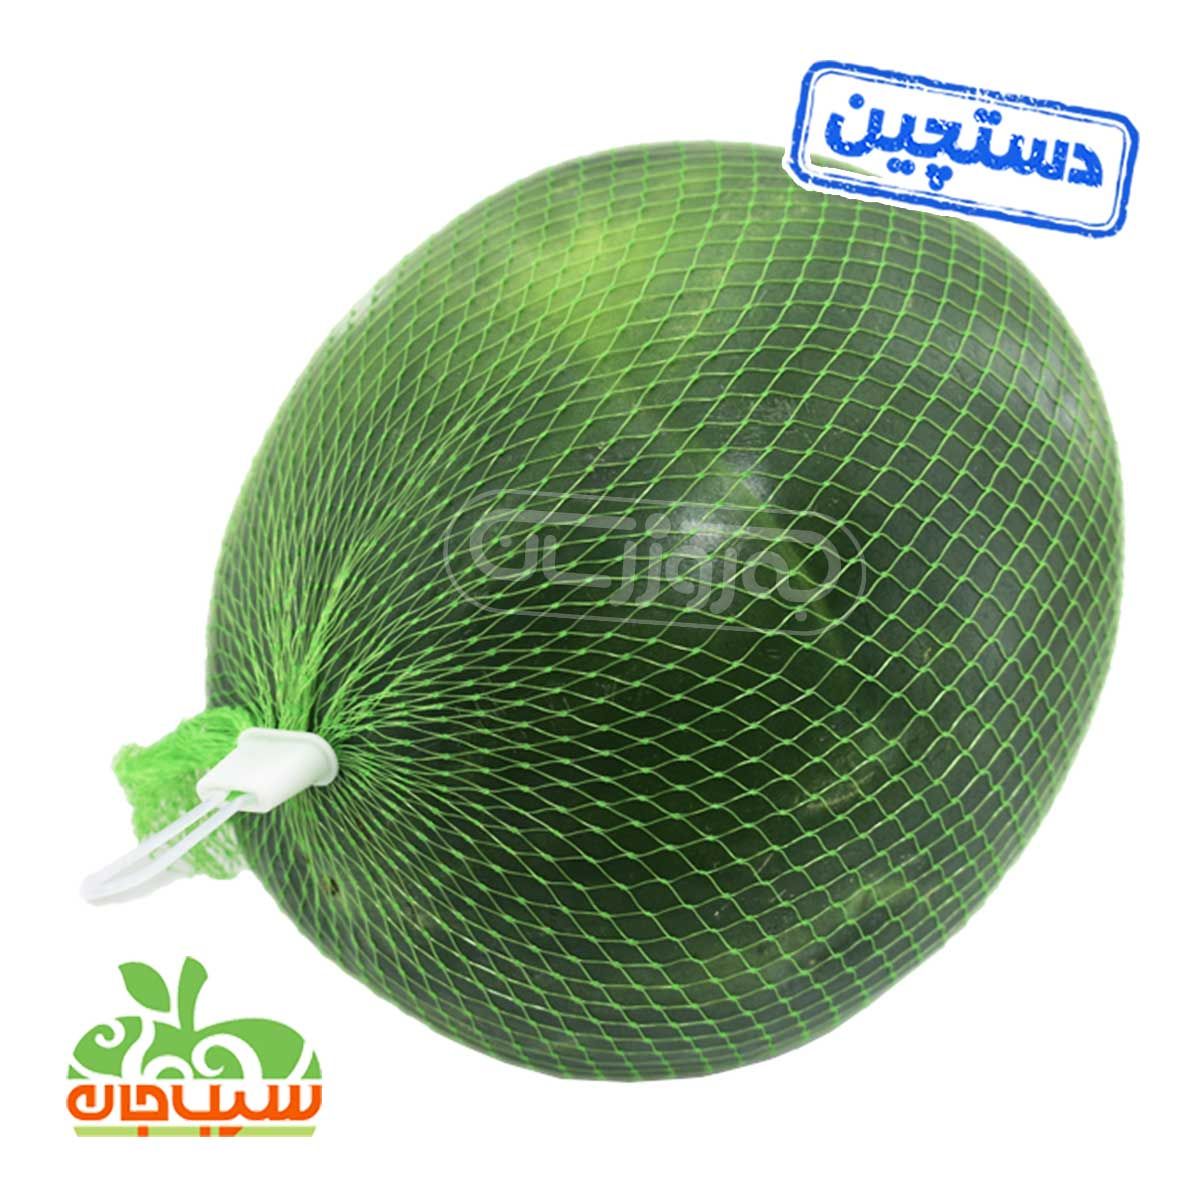 هندوانه محبوبی بزرگ دستچین سیب جان وزن حدود 7 تا 8 کیلوگرم